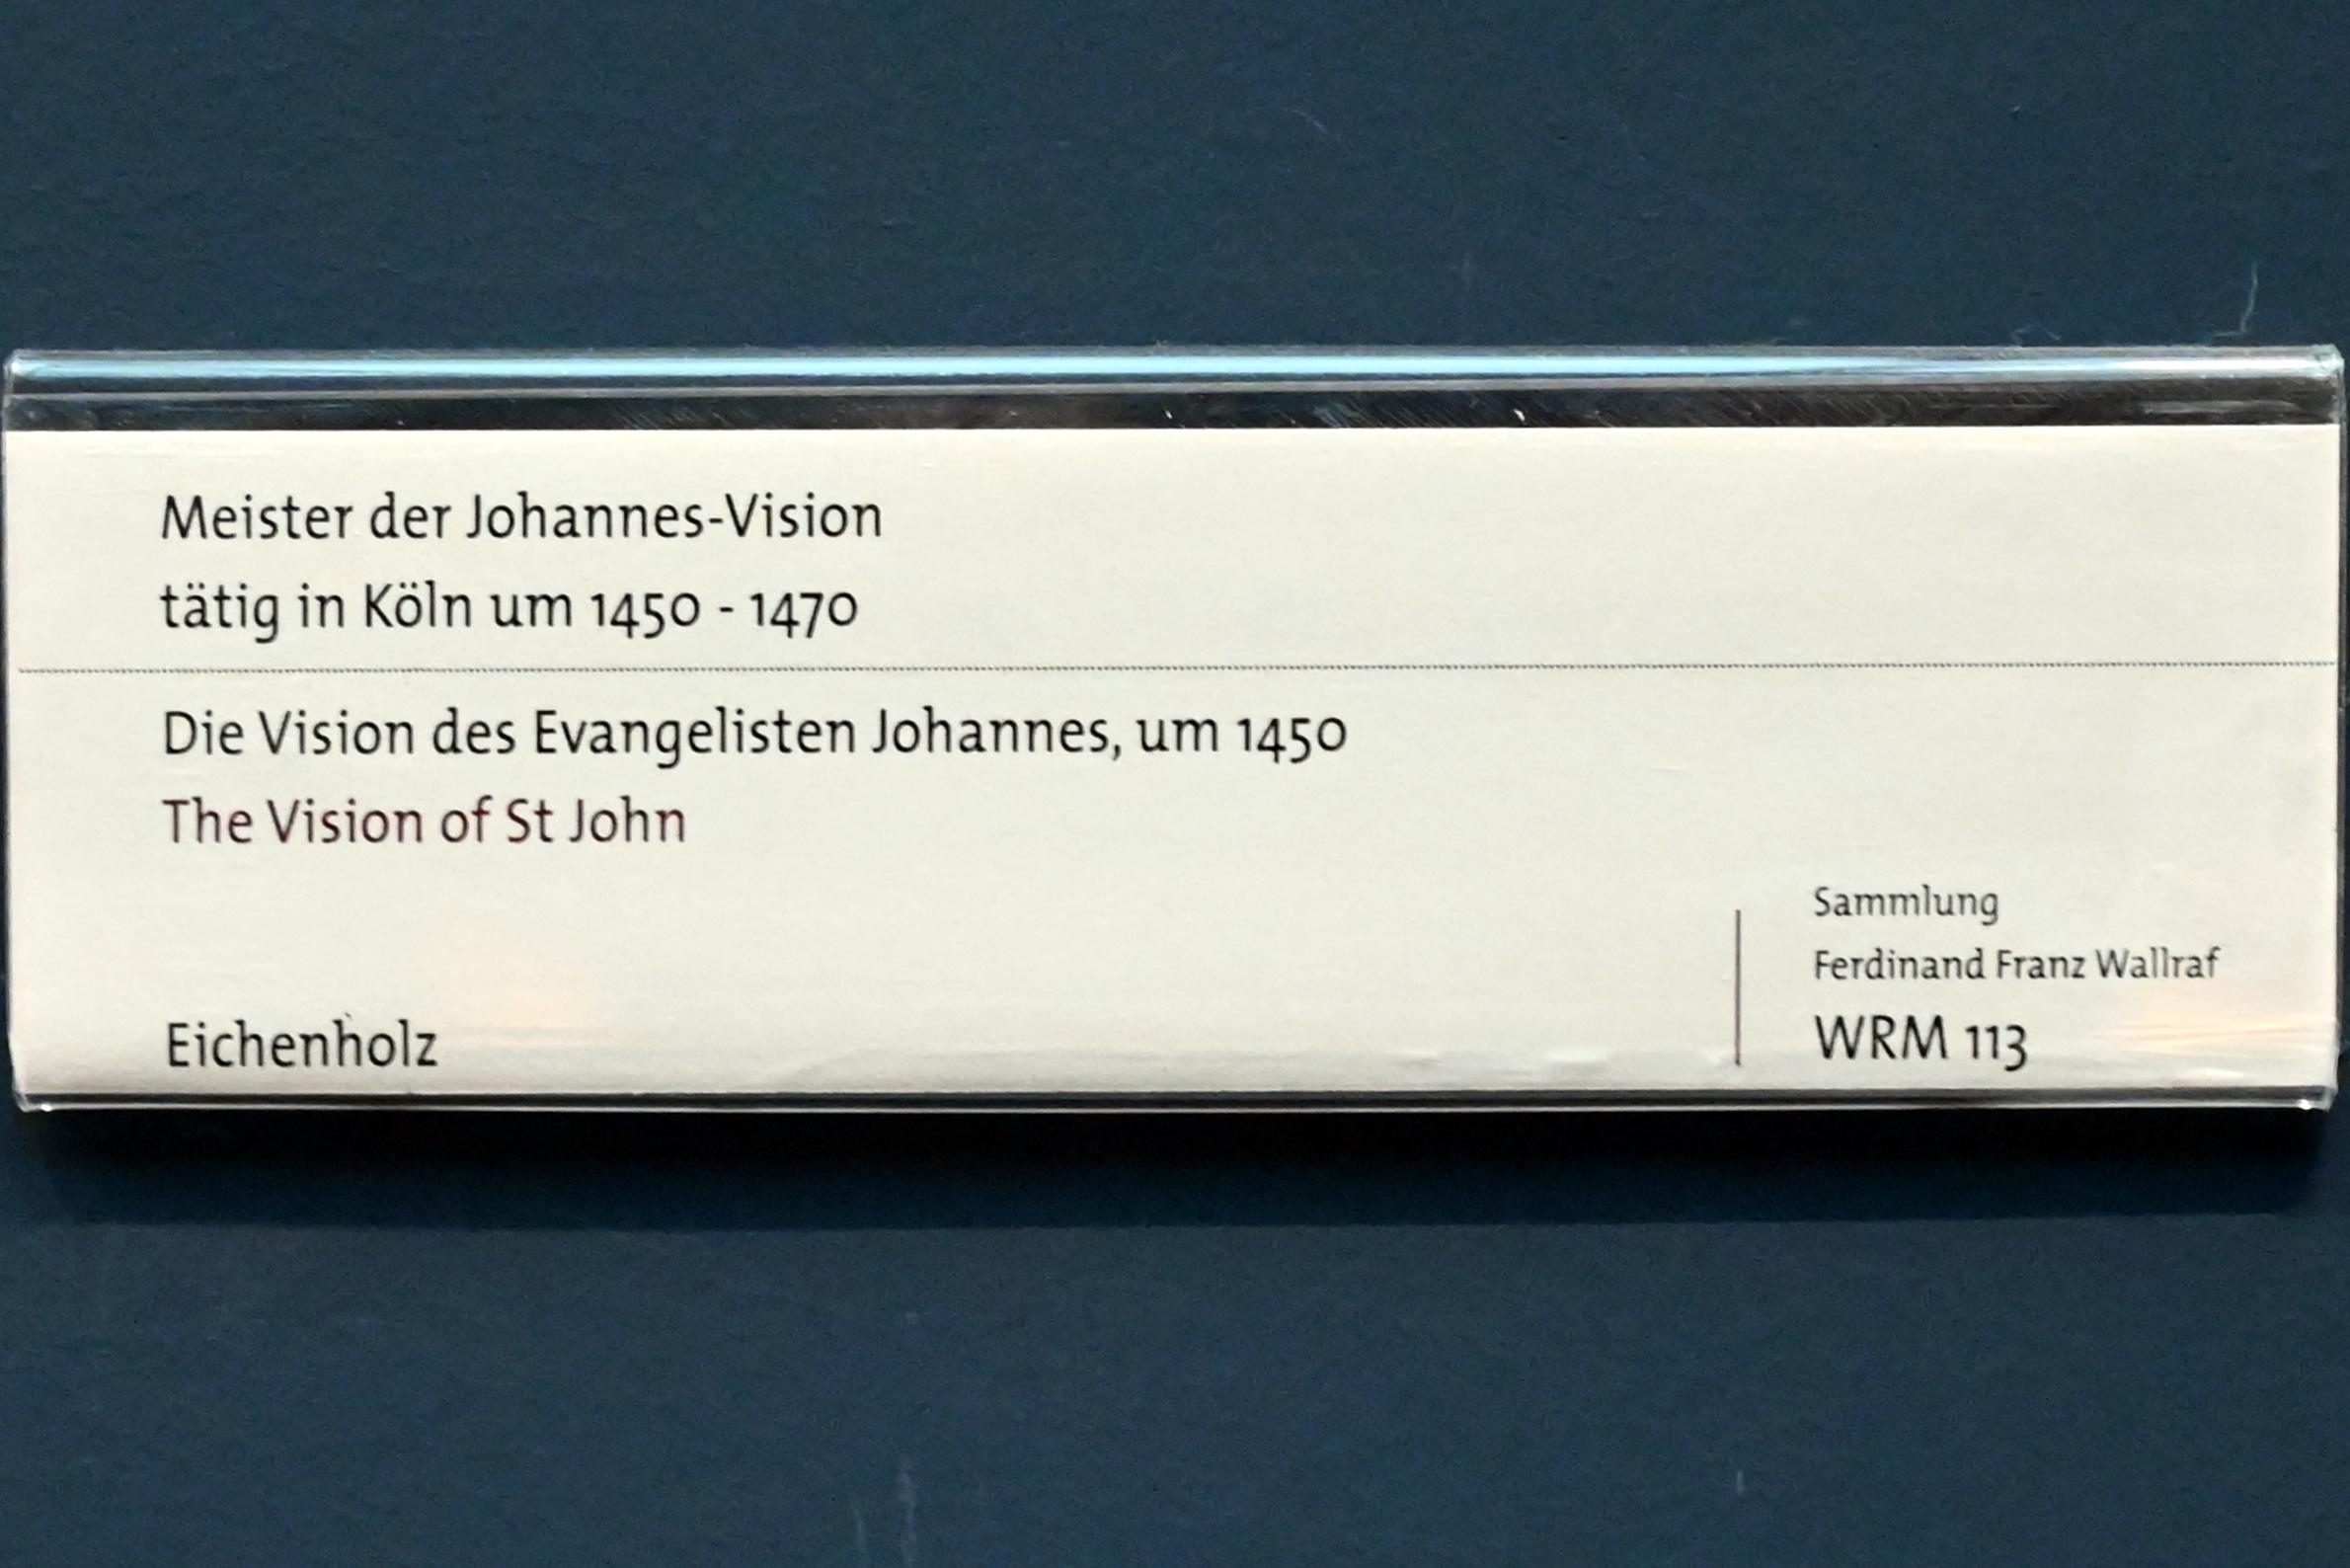 Meister der Johannesvision (1450–1455), Die Vision des Evangelisten Johannes, Köln, Wallraf-Richartz-Museum, Mittelalter - Saal 8, um 1450, Bild 2/2